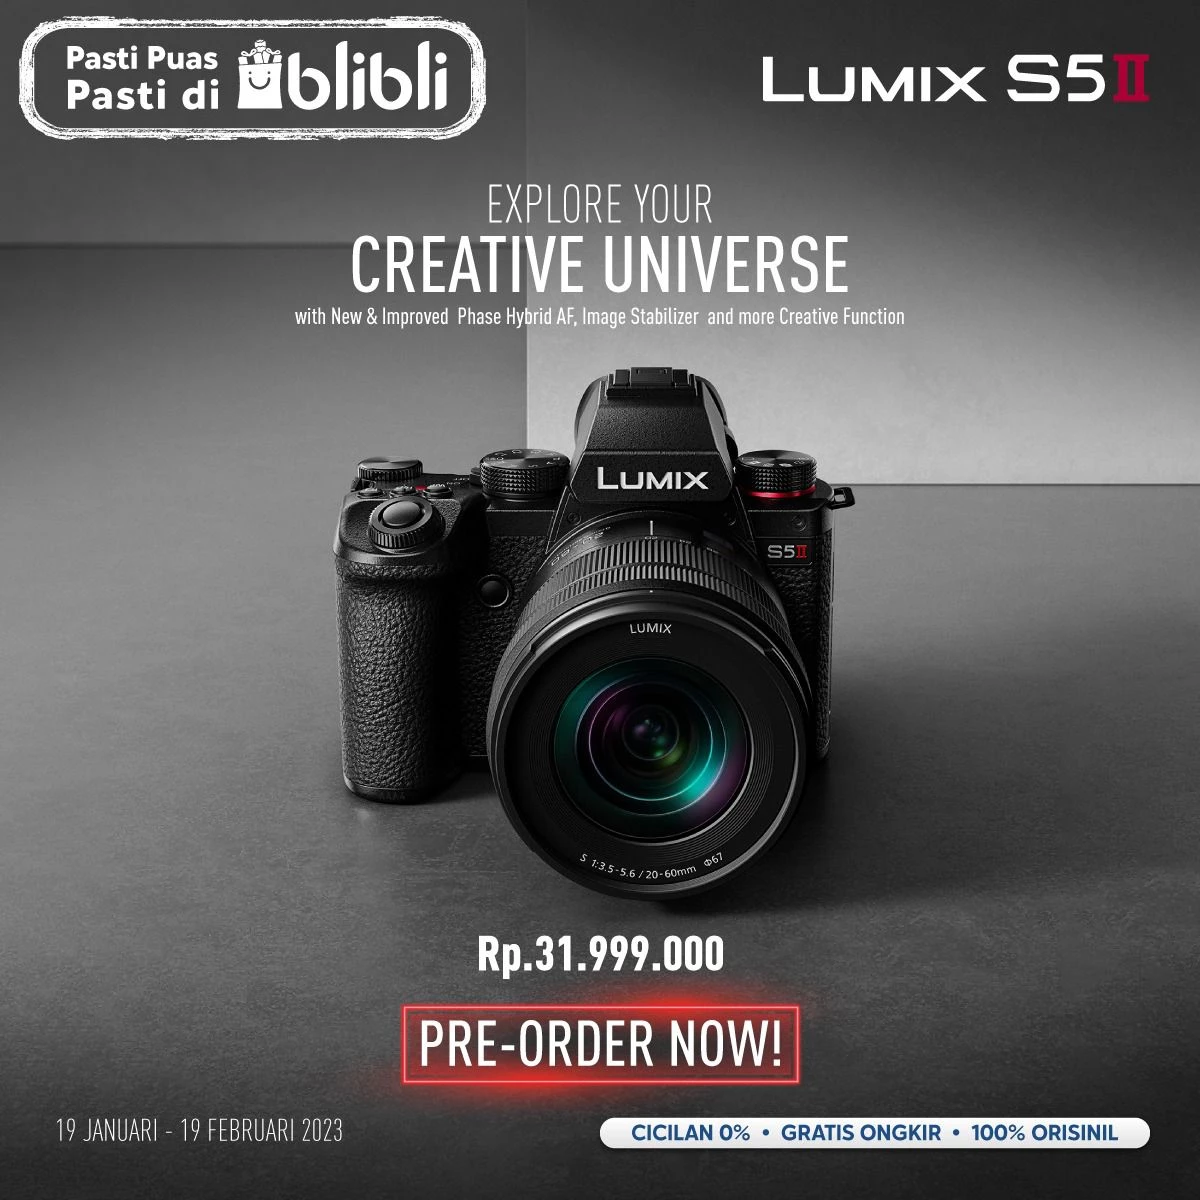 Kabar baik nih buat kamu yang sudah lama menunggu pre order kamera terbaru dari Lumix yaitu Lumix S5 Mark II. Karena sekarang sudah visa kamu PRE ORDER di DOSS.